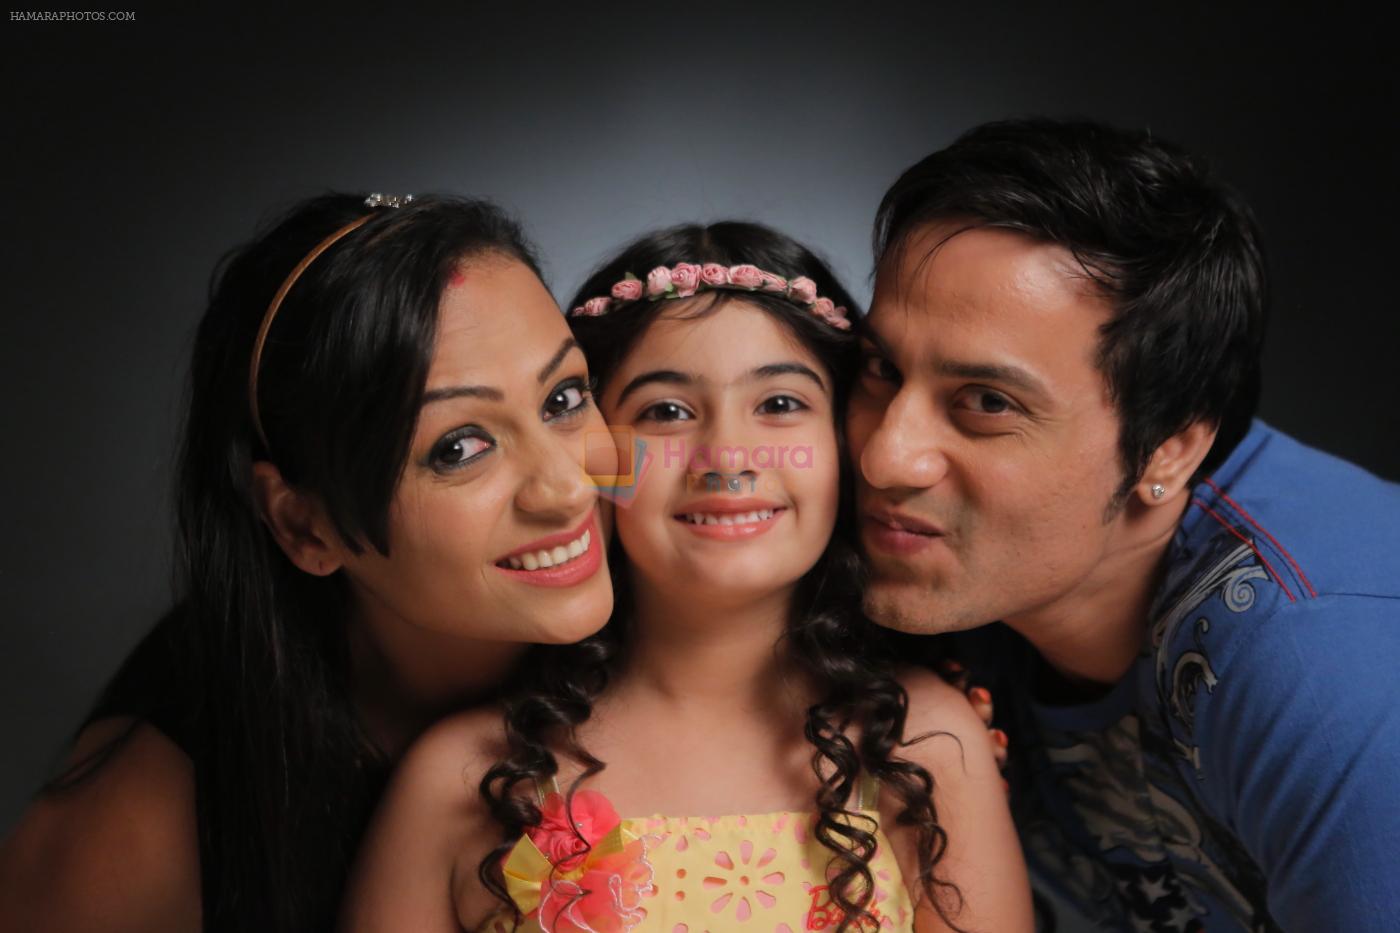 Ashita Dhawan Ruhana and Ashita Husband shoot for music video O Meri jaan in Jogeshwari on 25th May 2015